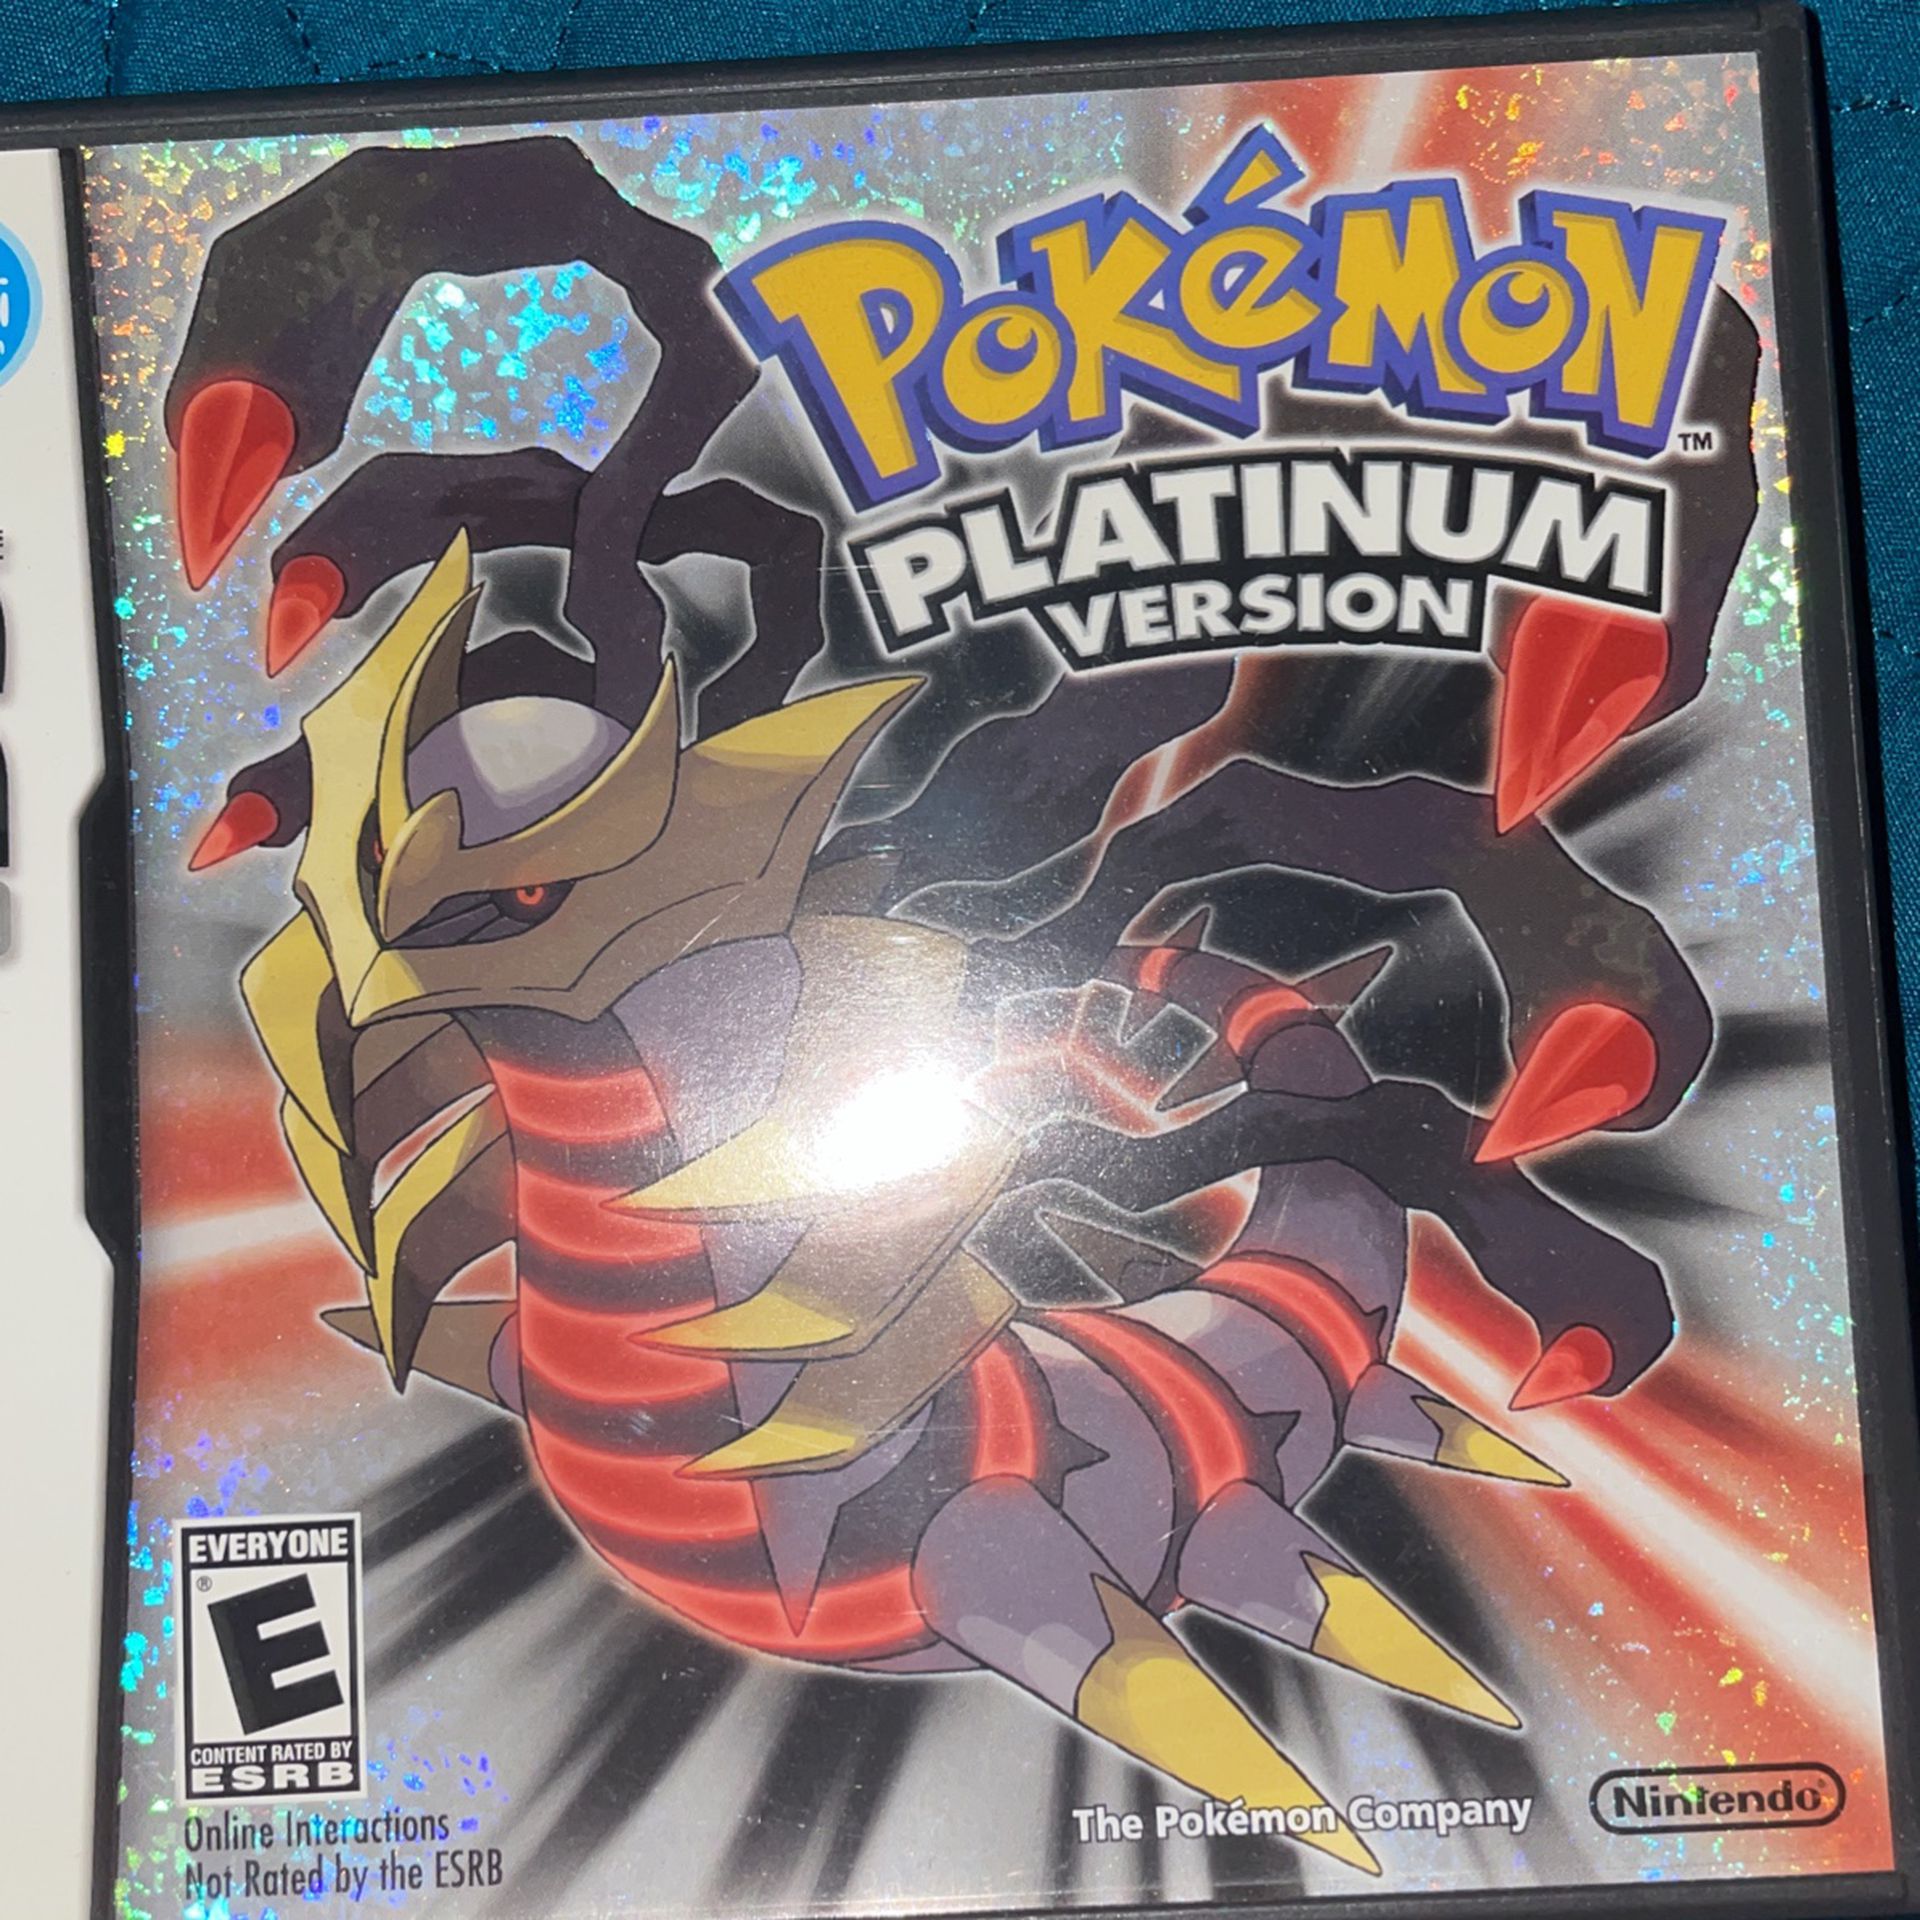 Pokémon Platinum Version (With Box And Manual)